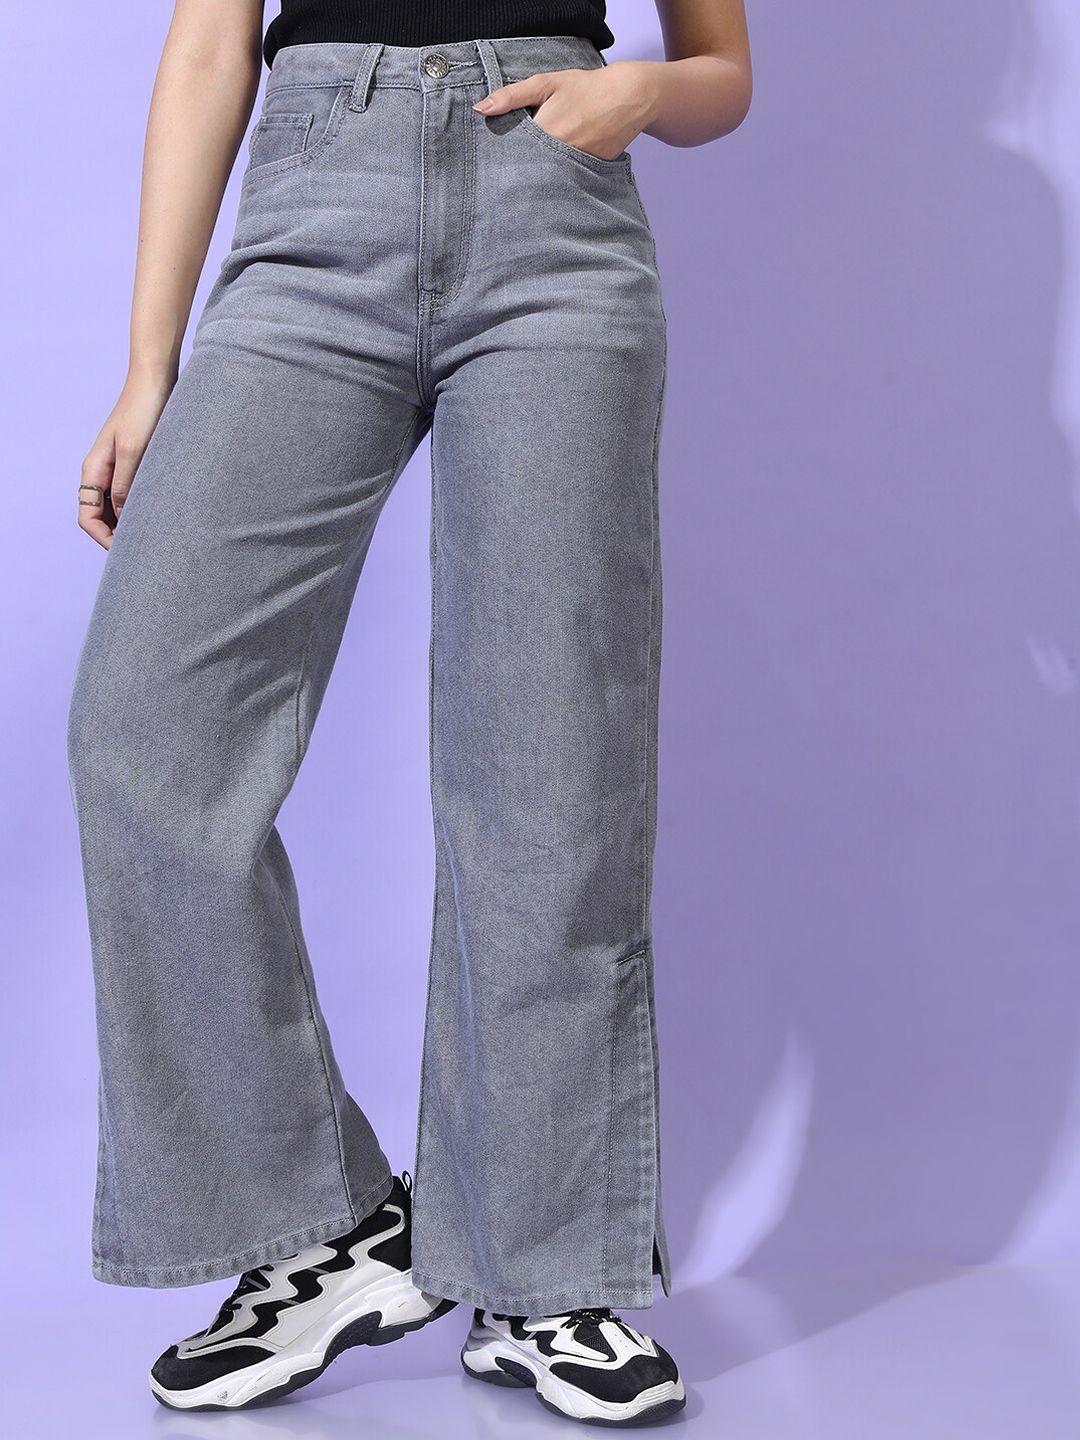 tokyo talkies women grey clean look heavy fade jeans